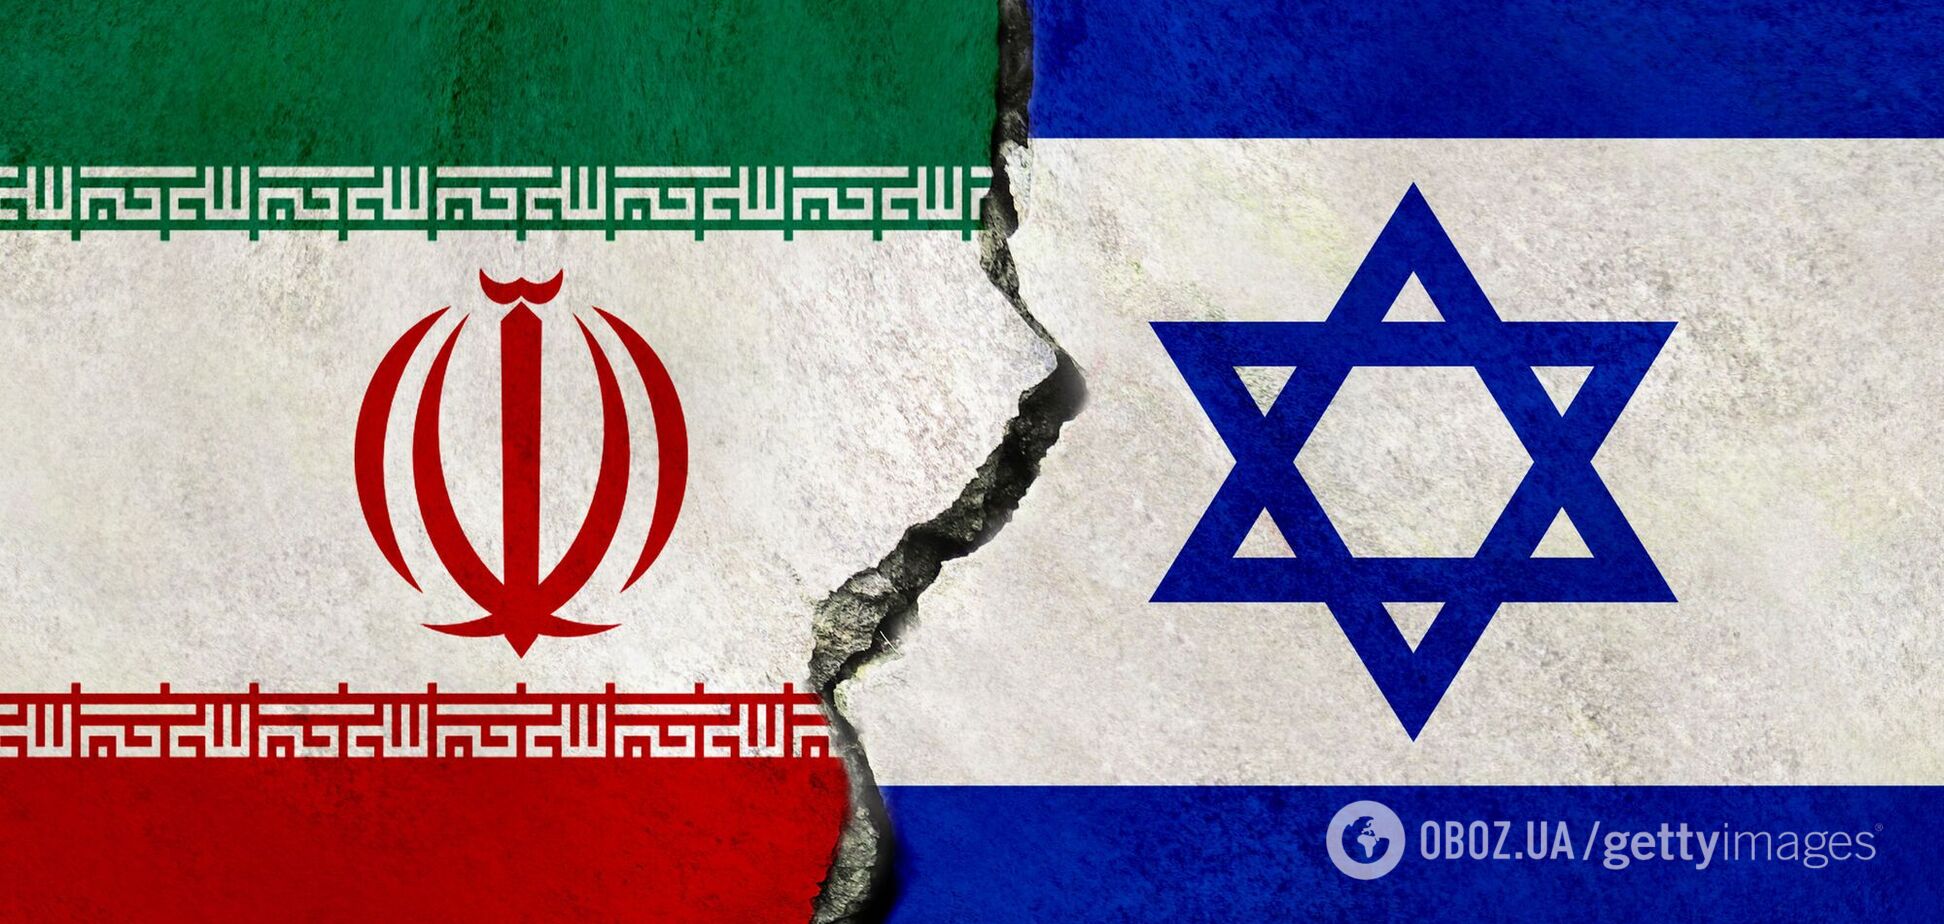 Израиль нанес ракетный удар по объекту в Иране, полеты над Тегераном и другими городами приостанавливали. Все подробности